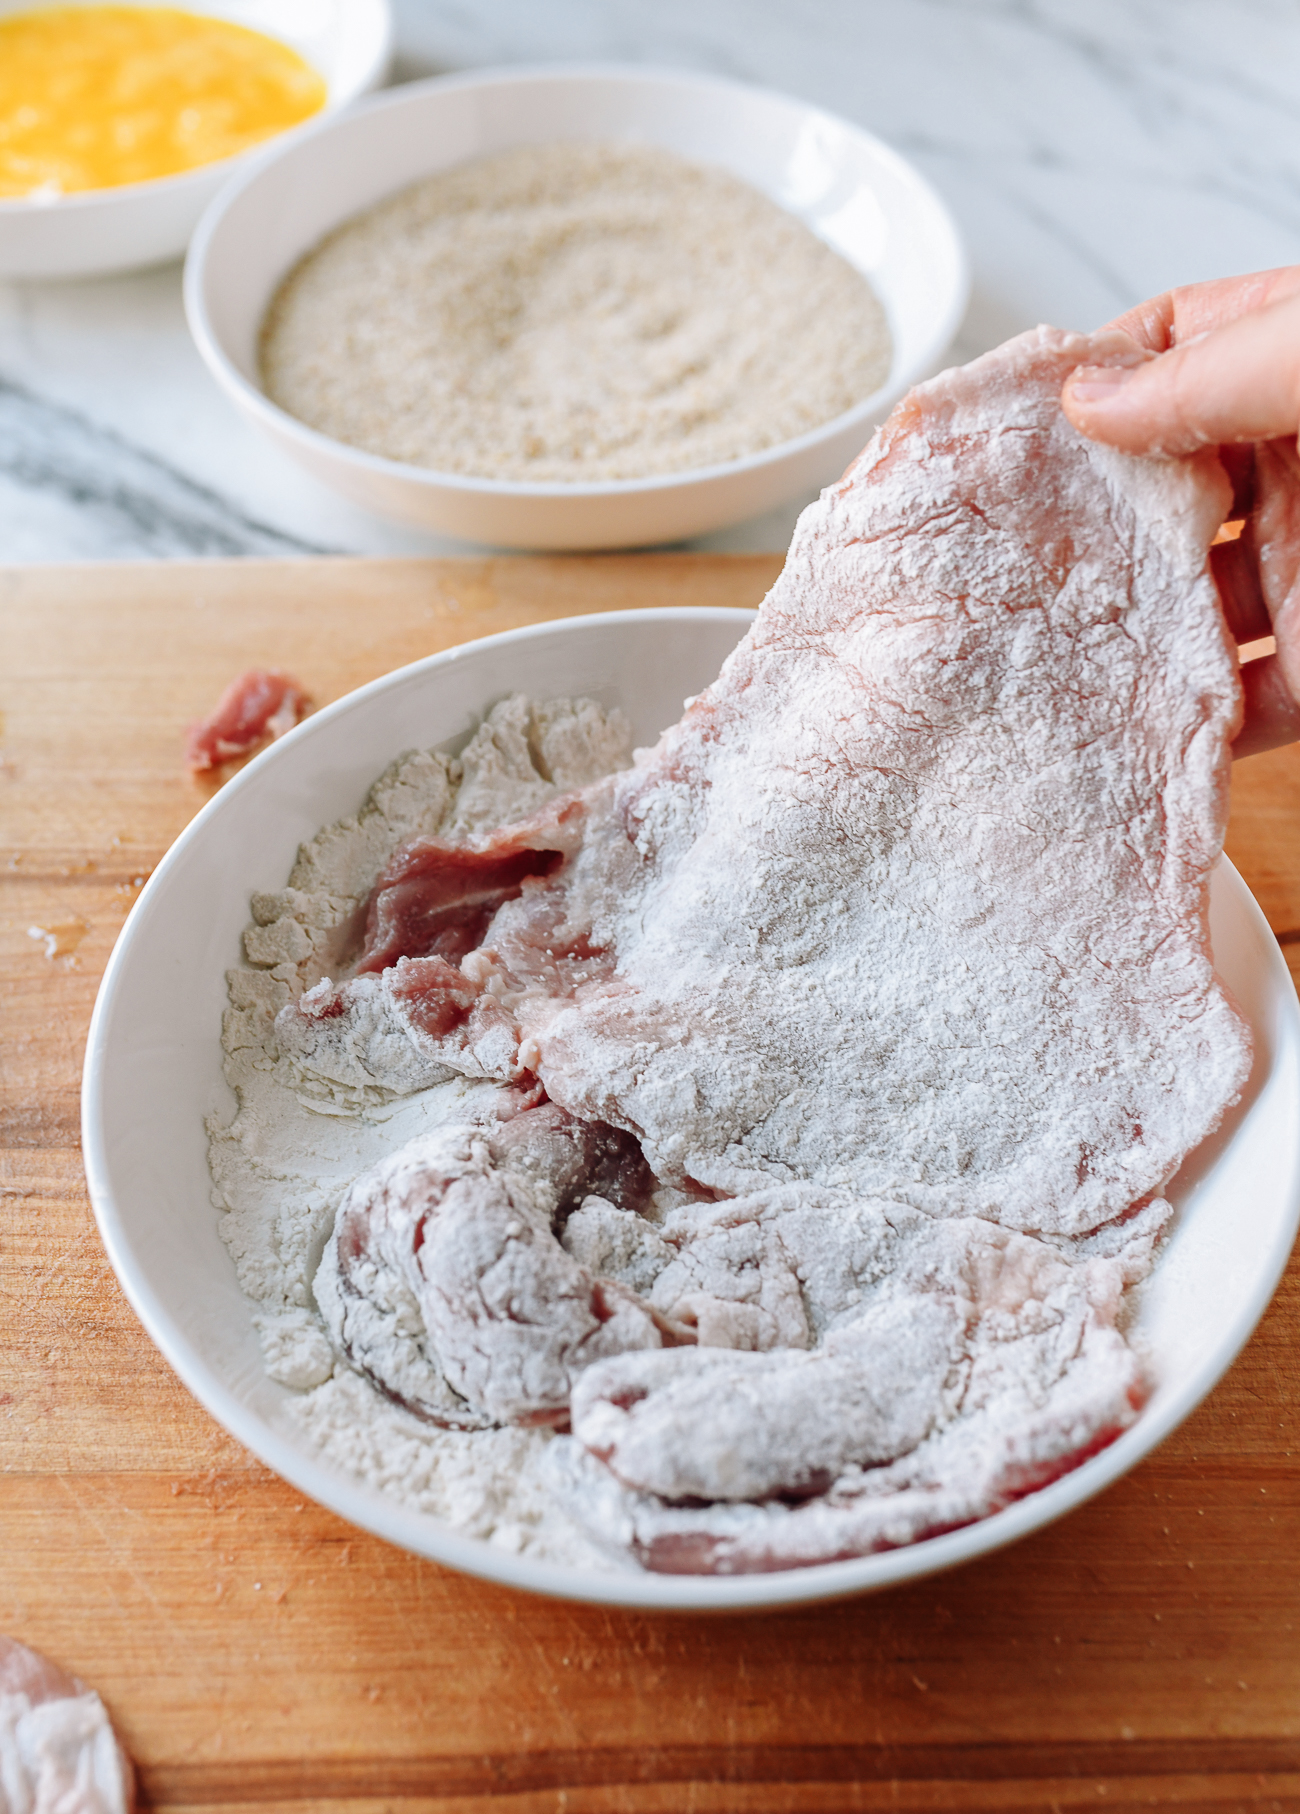 Dredging pork chop in flour